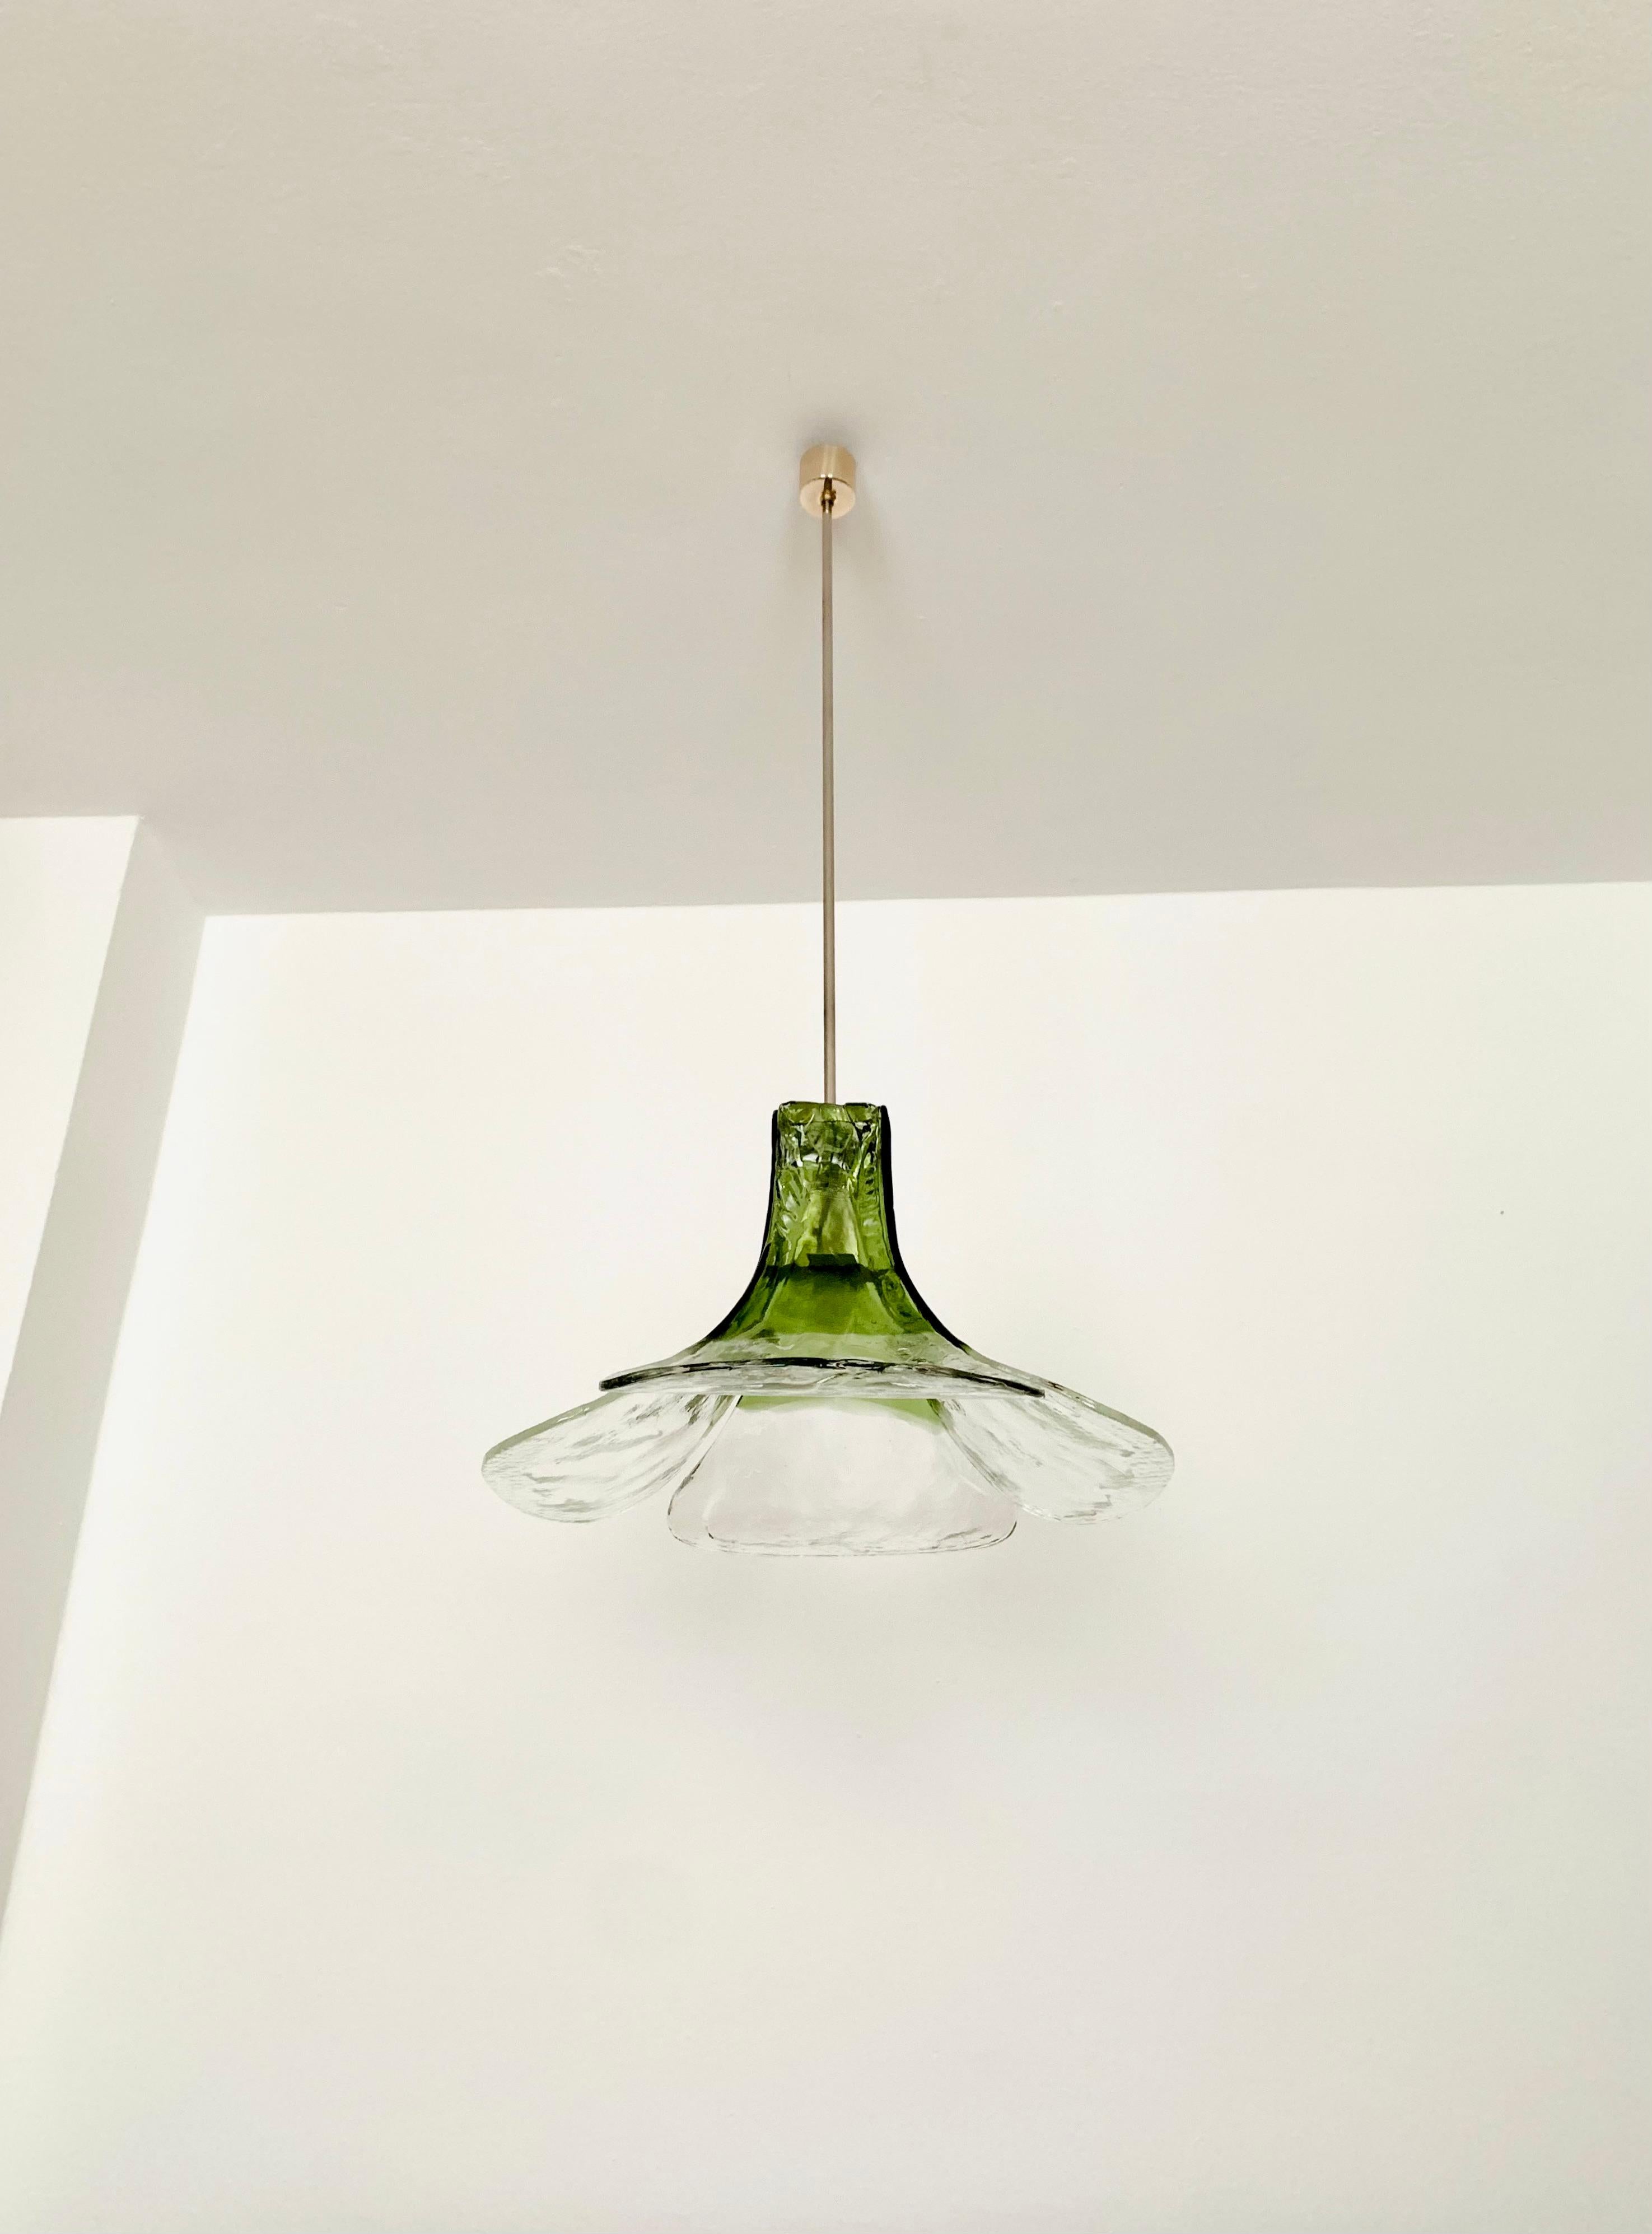 Sehr schöne und große Murano-Glas-Deckenleuchte aus den 1960er Jahren.
Die Lampe ist sehr elegant.
Die Struktur der Gläser erzeugt ein sehr funkelndes Licht.
Fantastisches Design und eine Bereicherung für jedes Haus.

Hersteller: